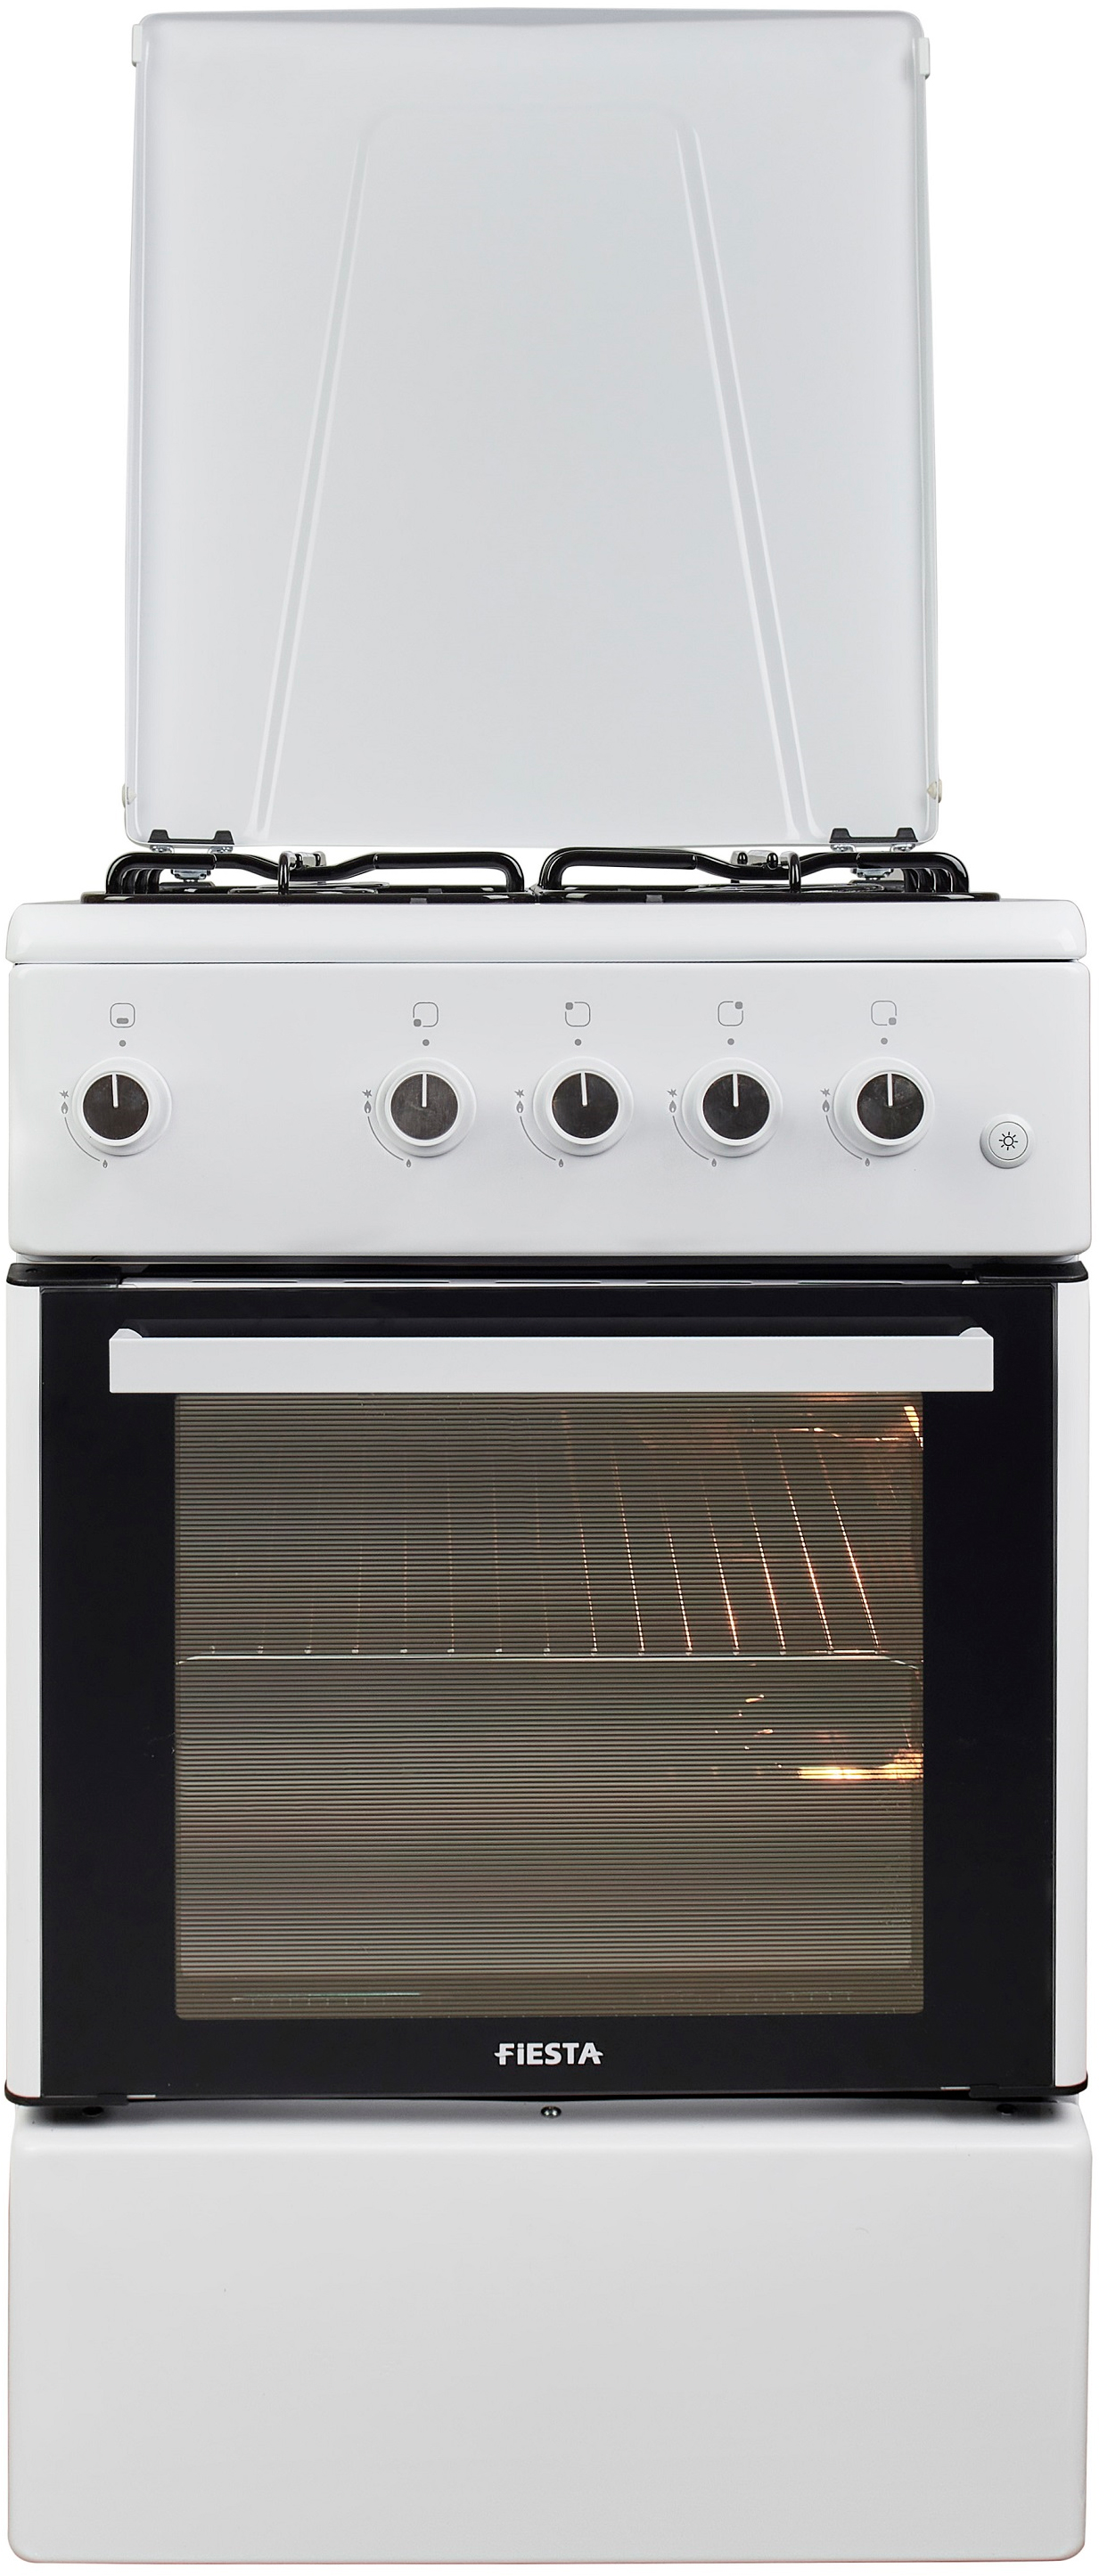 Кухонная плита Fiesta G 5403 SACD-W в интернет-магазине, главное фото